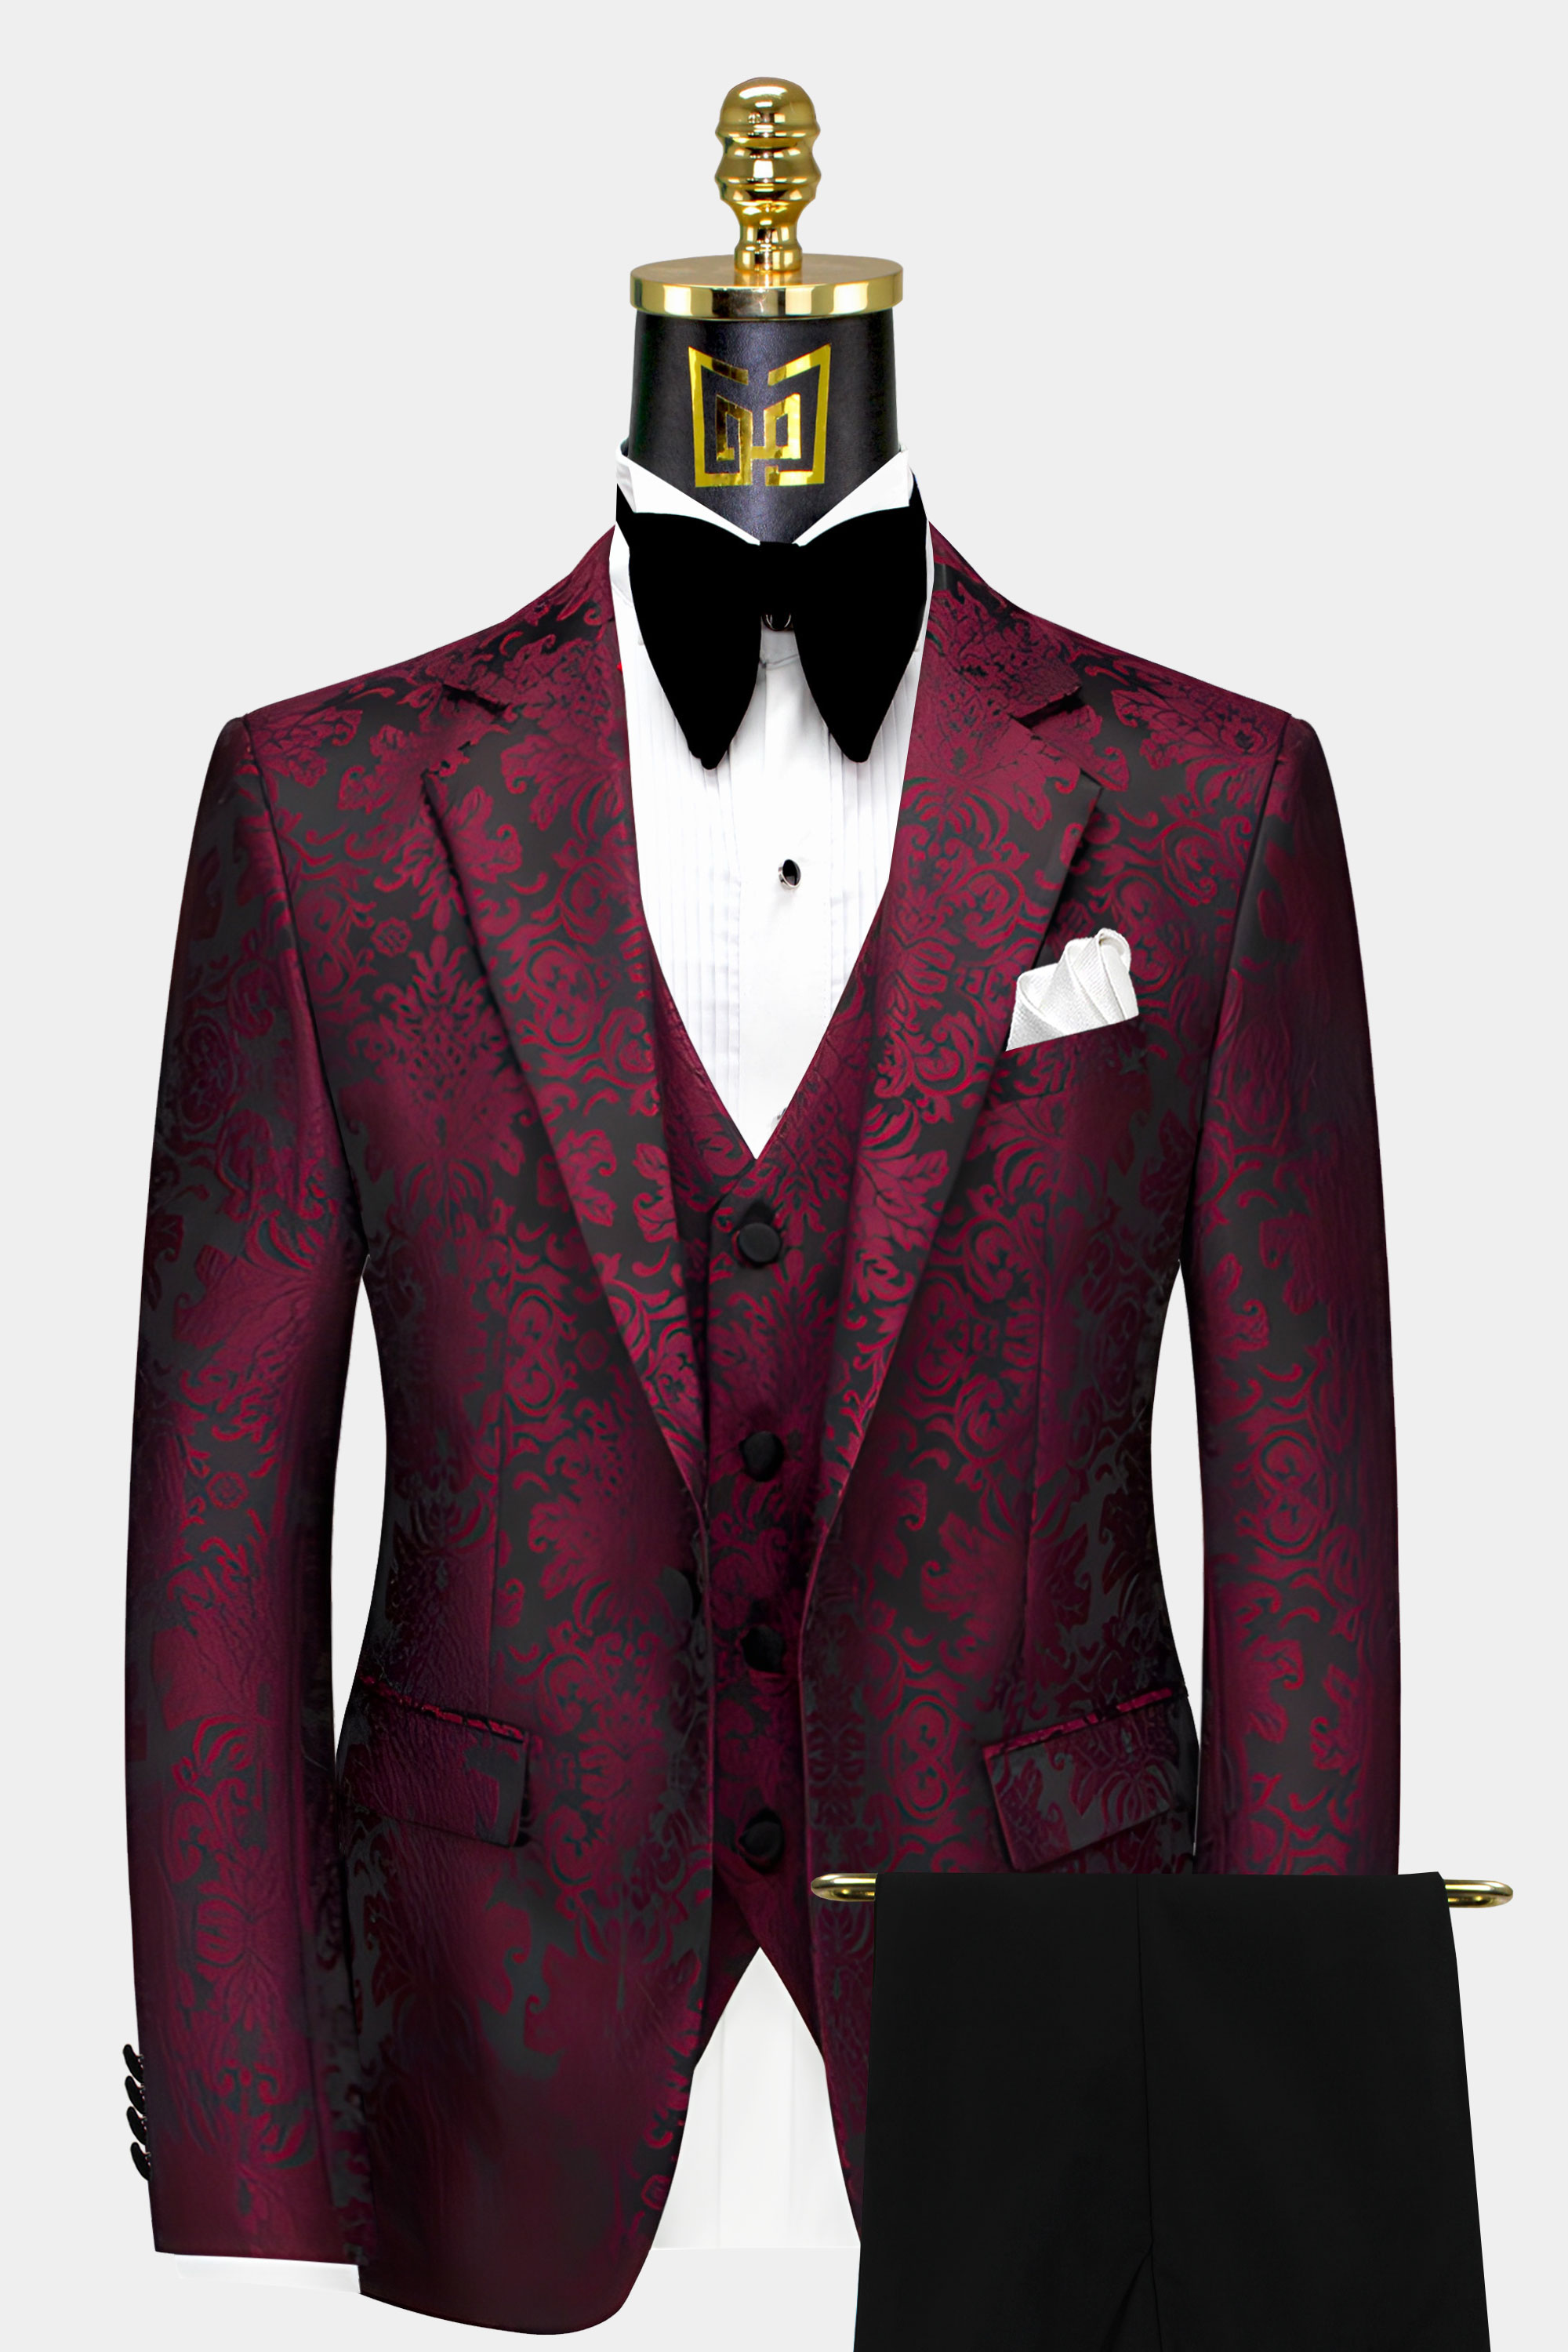 Black and-Burgundy-Suit-Groom-Wedding-Prom-Tuxedo-For-Men-from-Gentlemansguru.com.